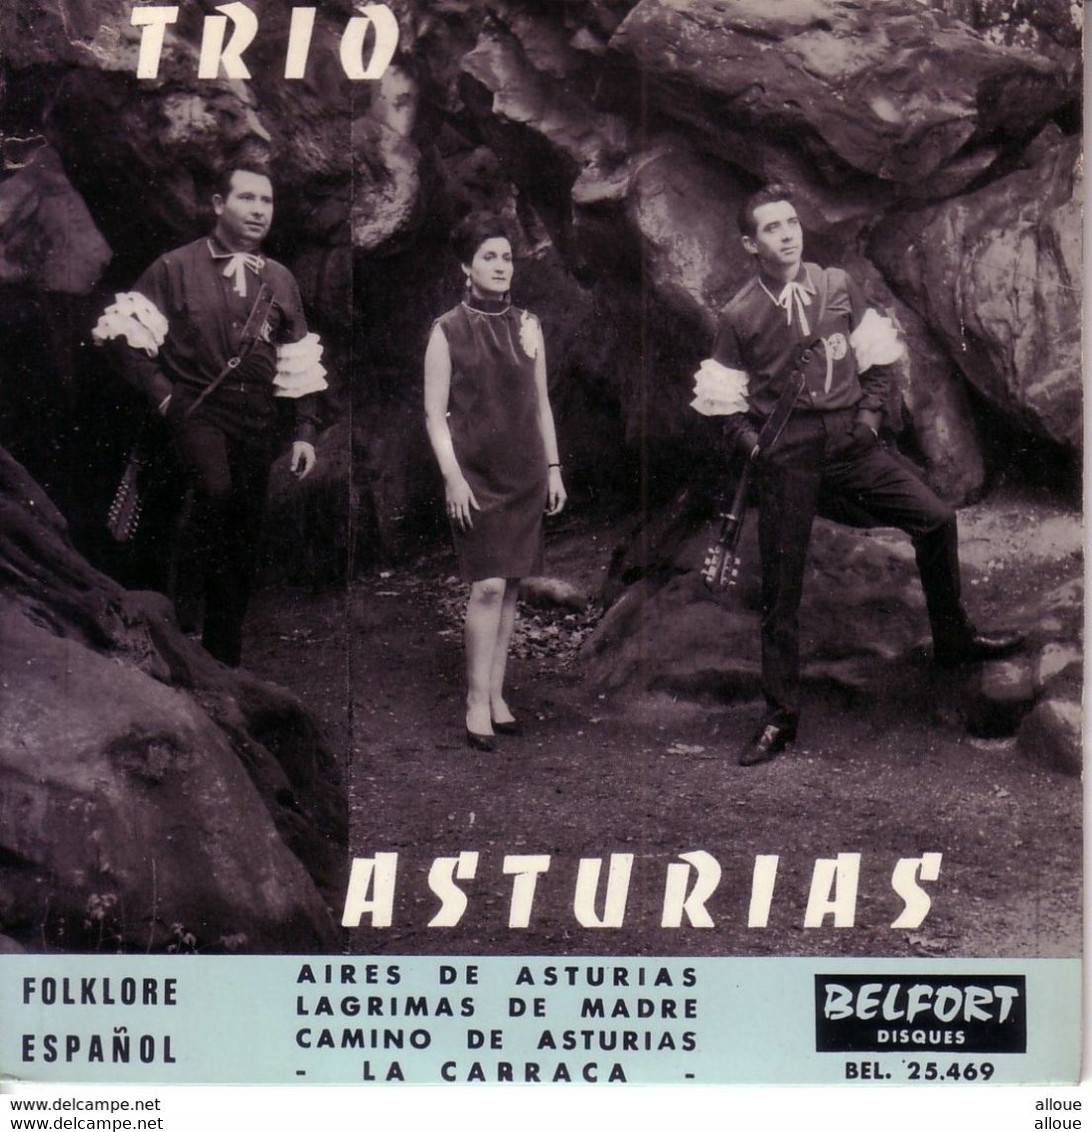 TRIO ASTURIAS FR EP  - AIRES DE ASTURIAS + 3 - Autres - Musique Espagnole